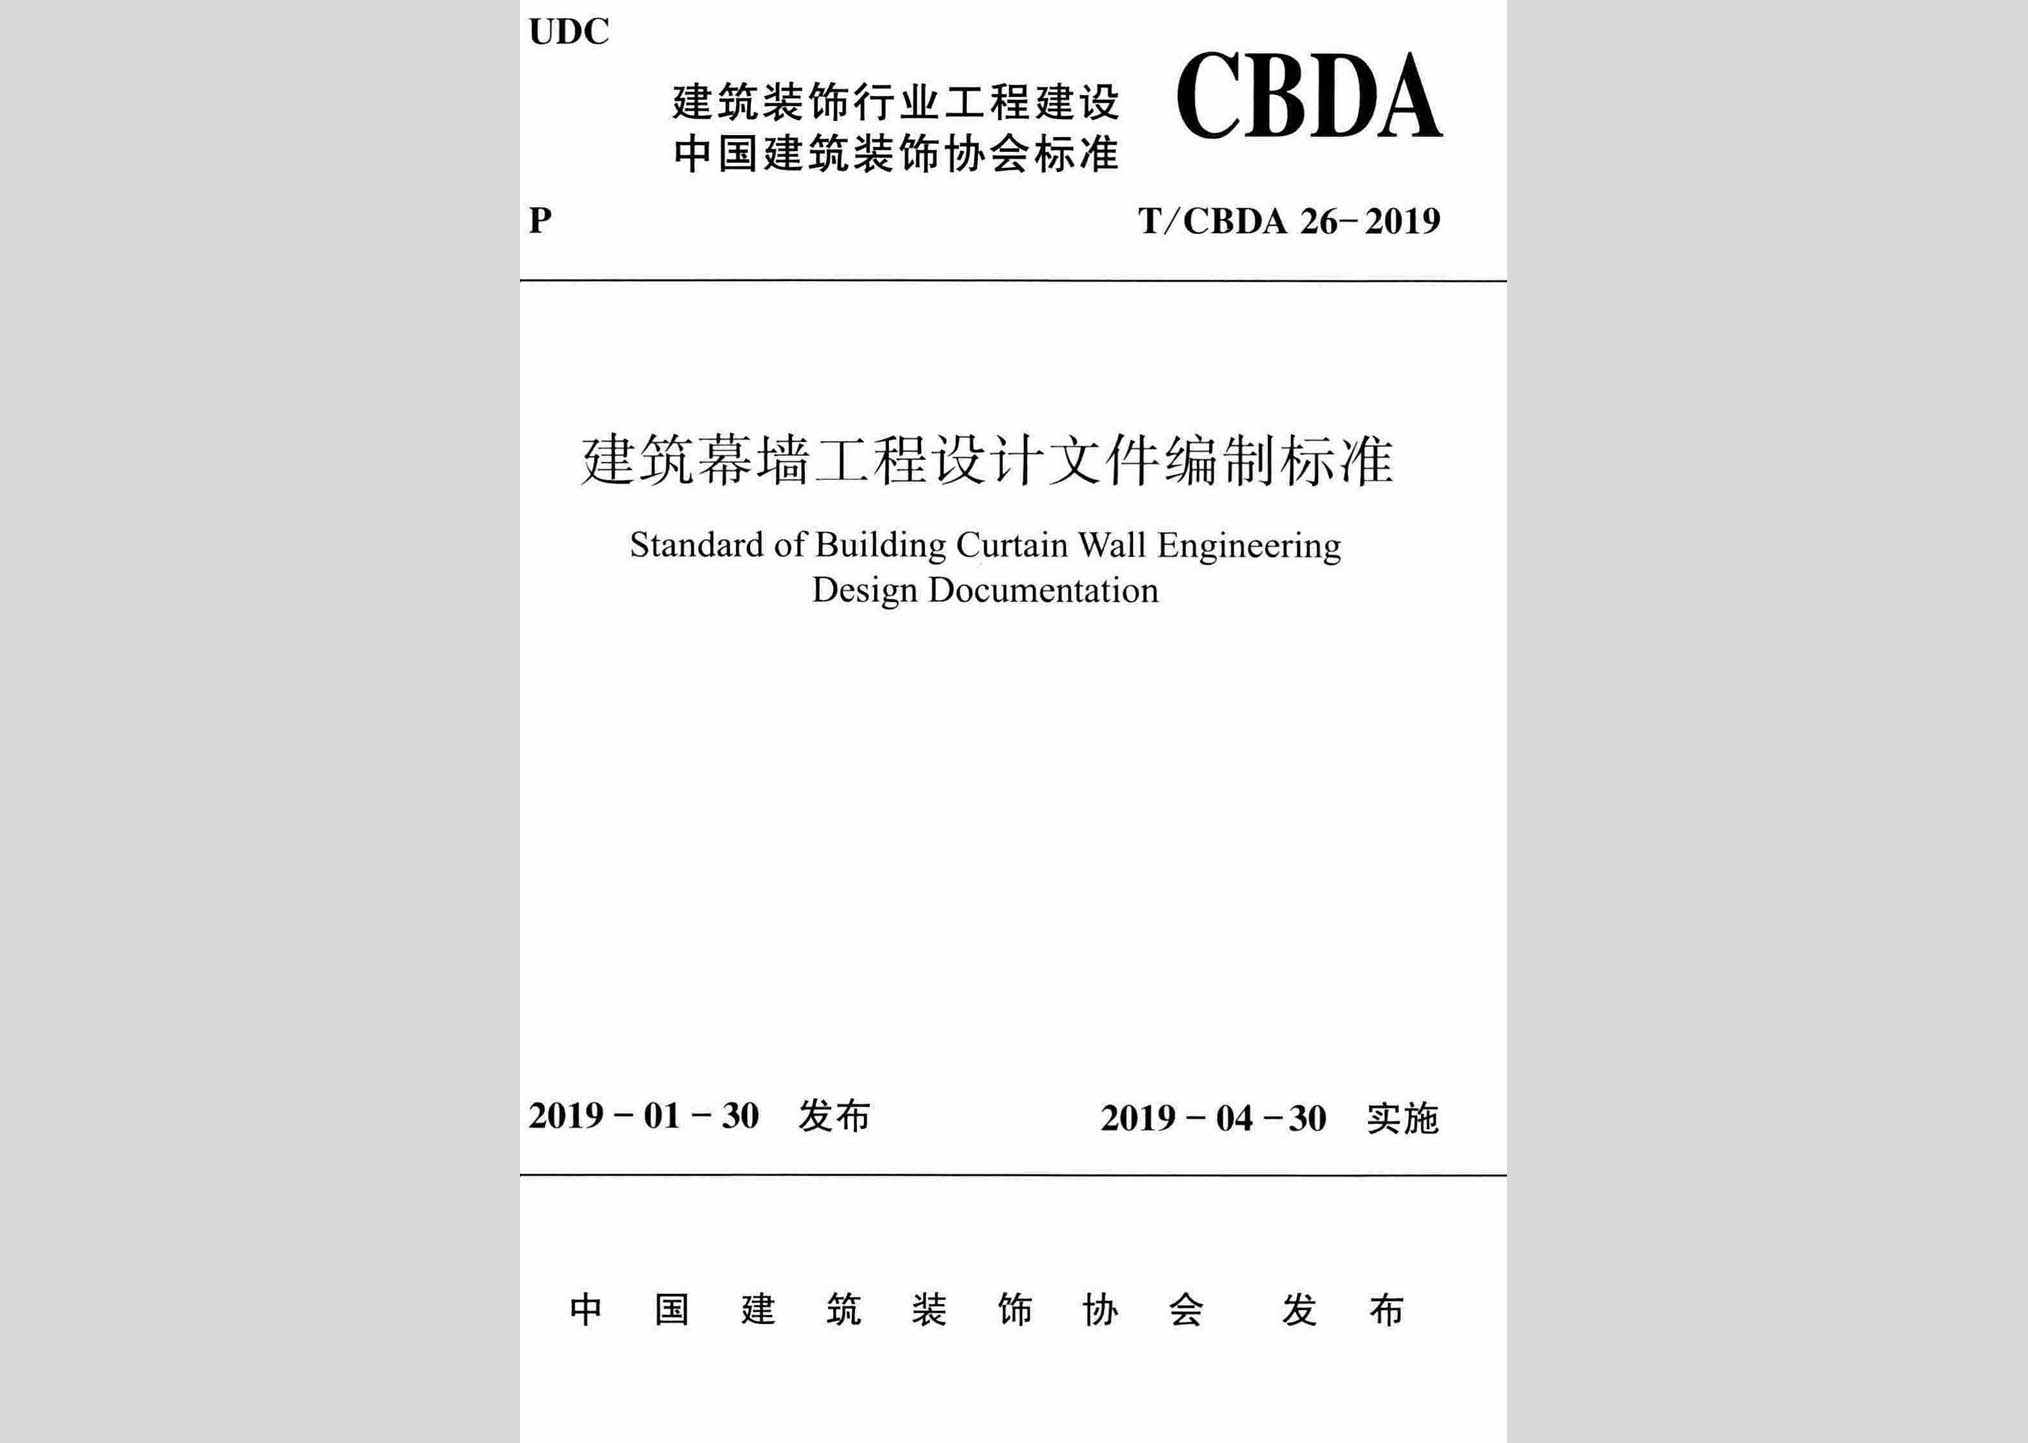 T/CBDA26-2019：建筑幕墙工程设计文件编制标准